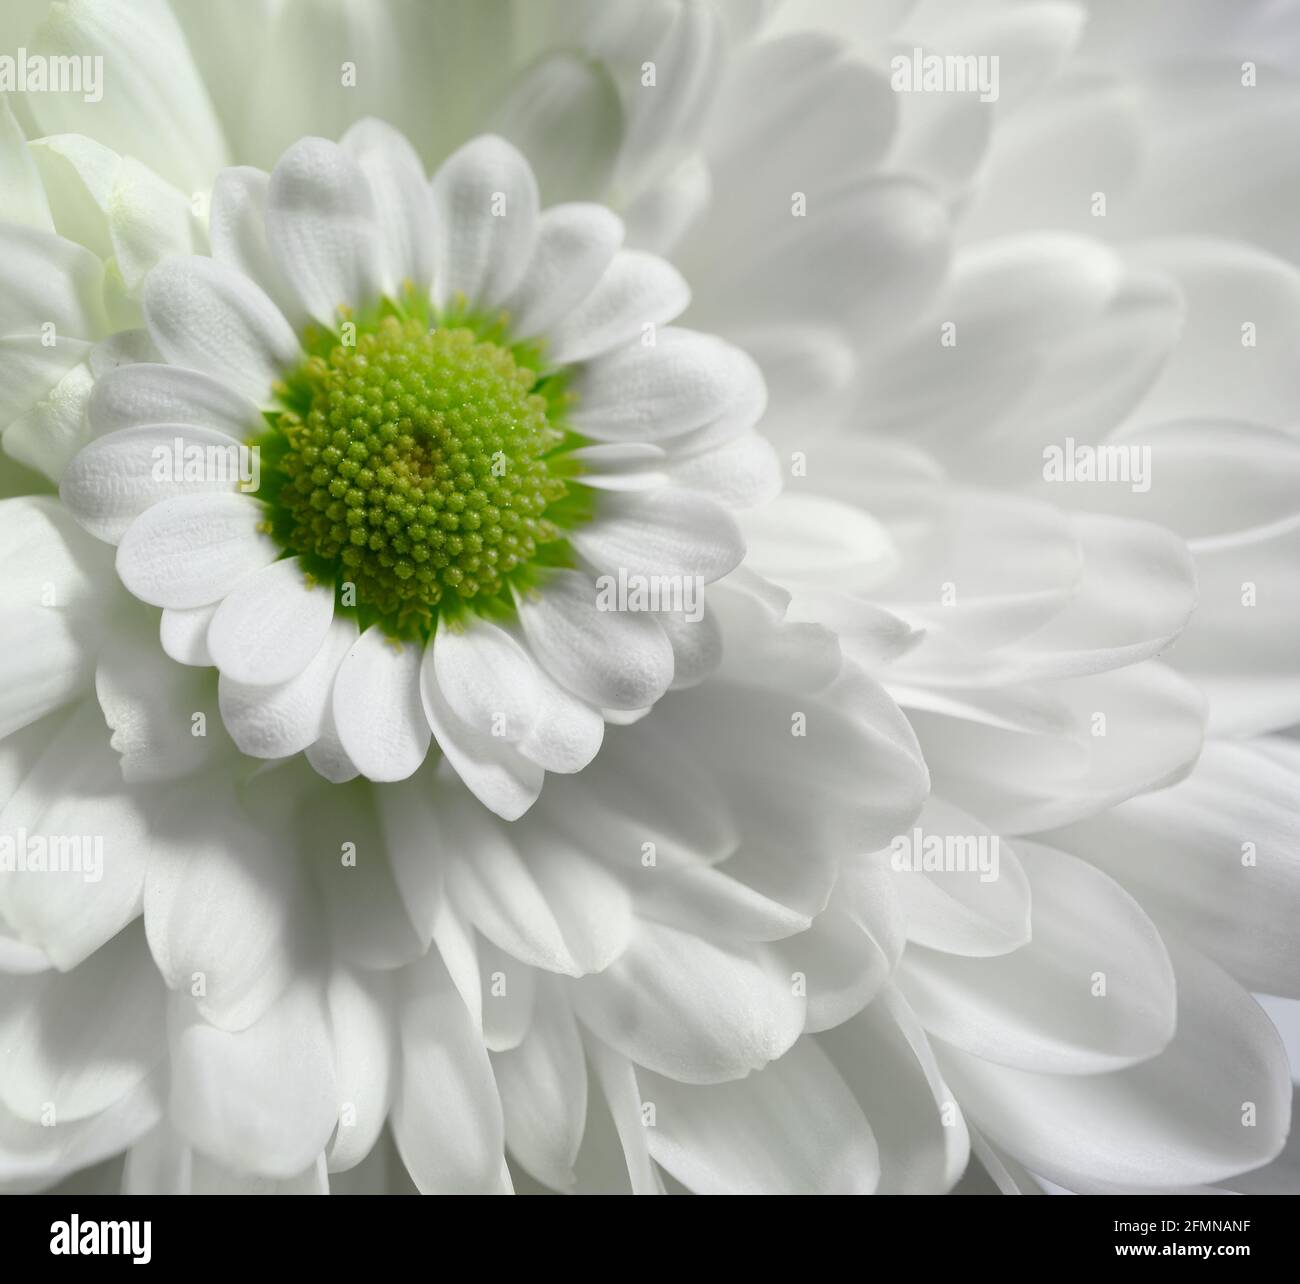 Common daisy close up macro Stock Photo